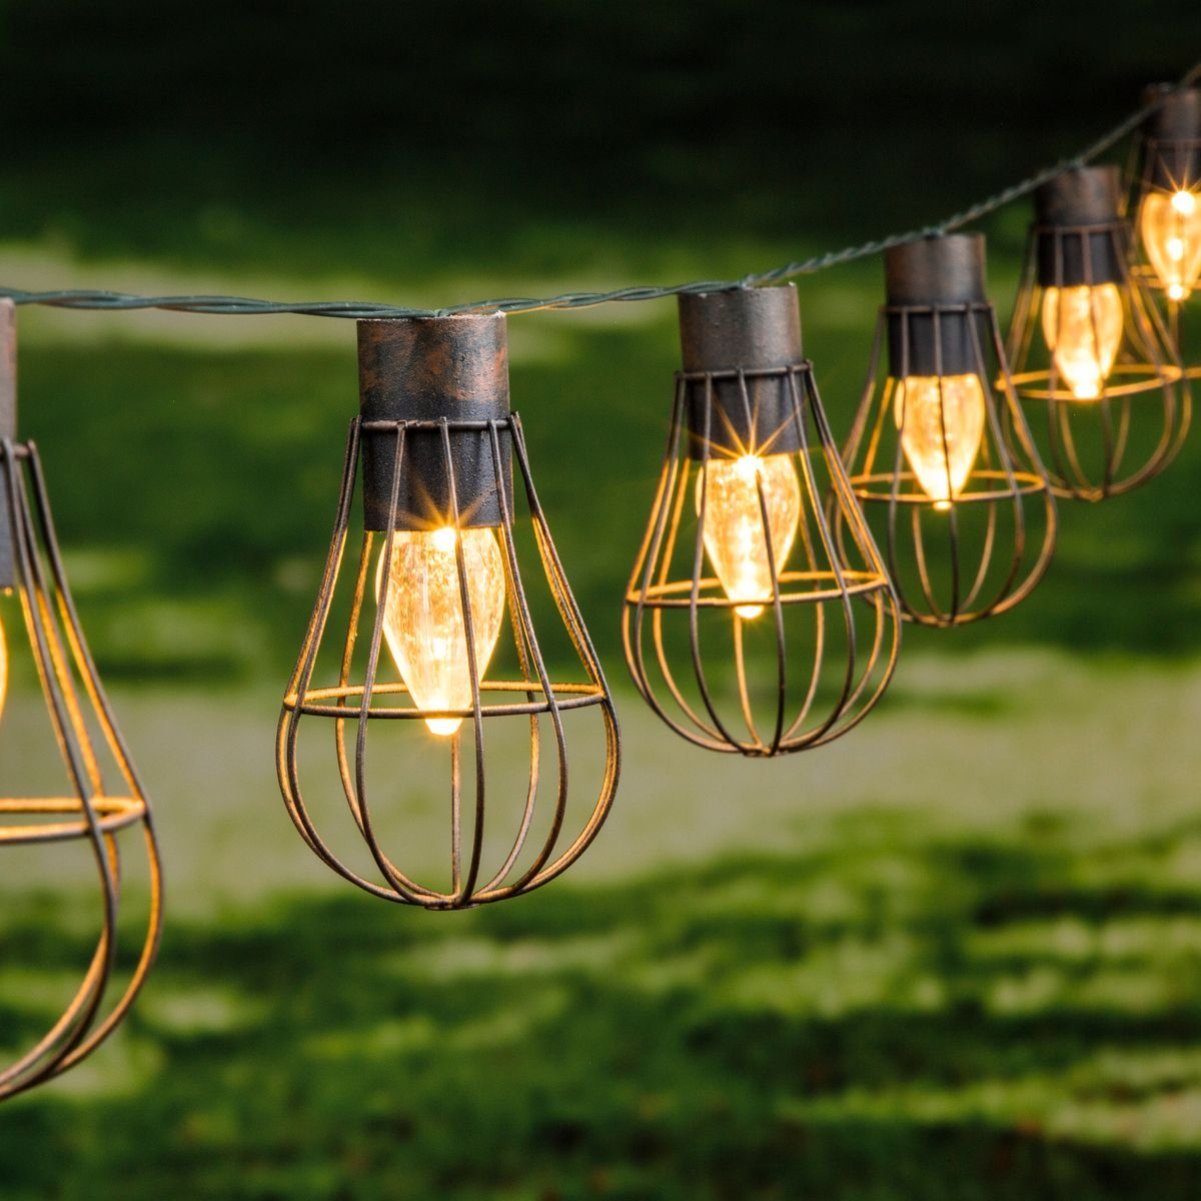 Gravidus LED-Lichterkette »LED Solar Lichterkette mit 10 Lampen Beleuchtung  Glühbirne Außen Party Garten« online kaufen | OTTO